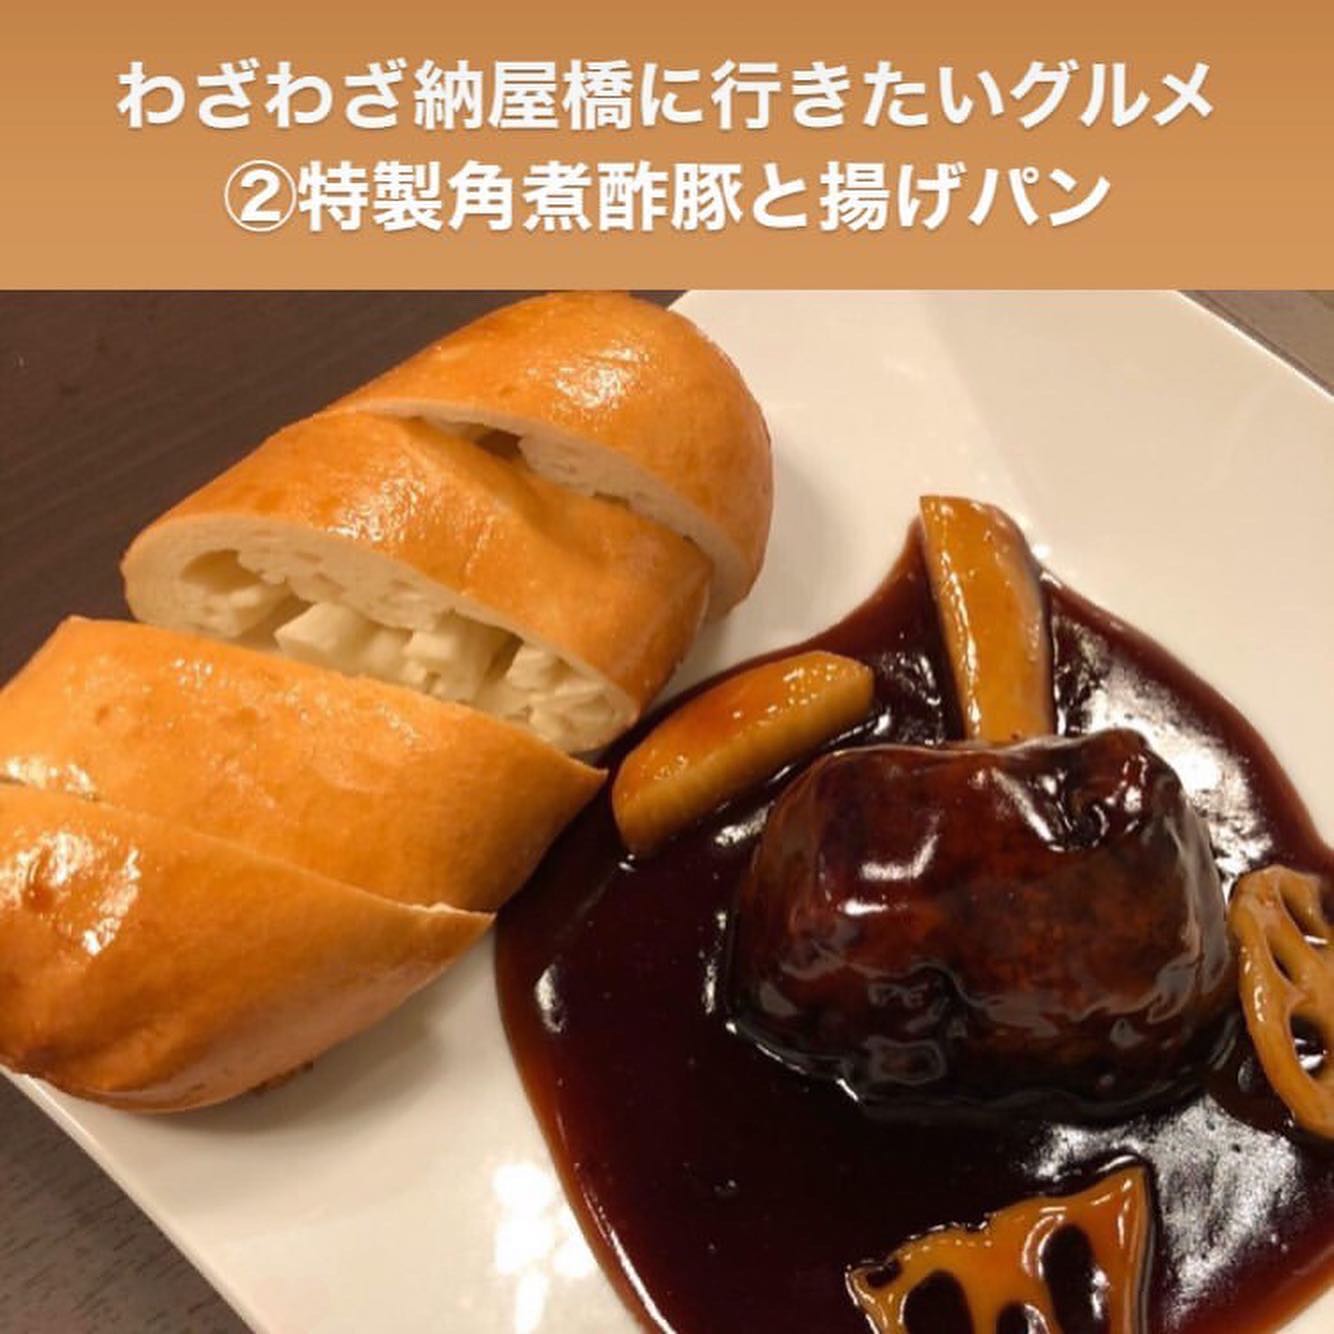 人気の特製一口餃子と特製角煮酢豚の両方が楽しめるコースが登場！- from Instagram